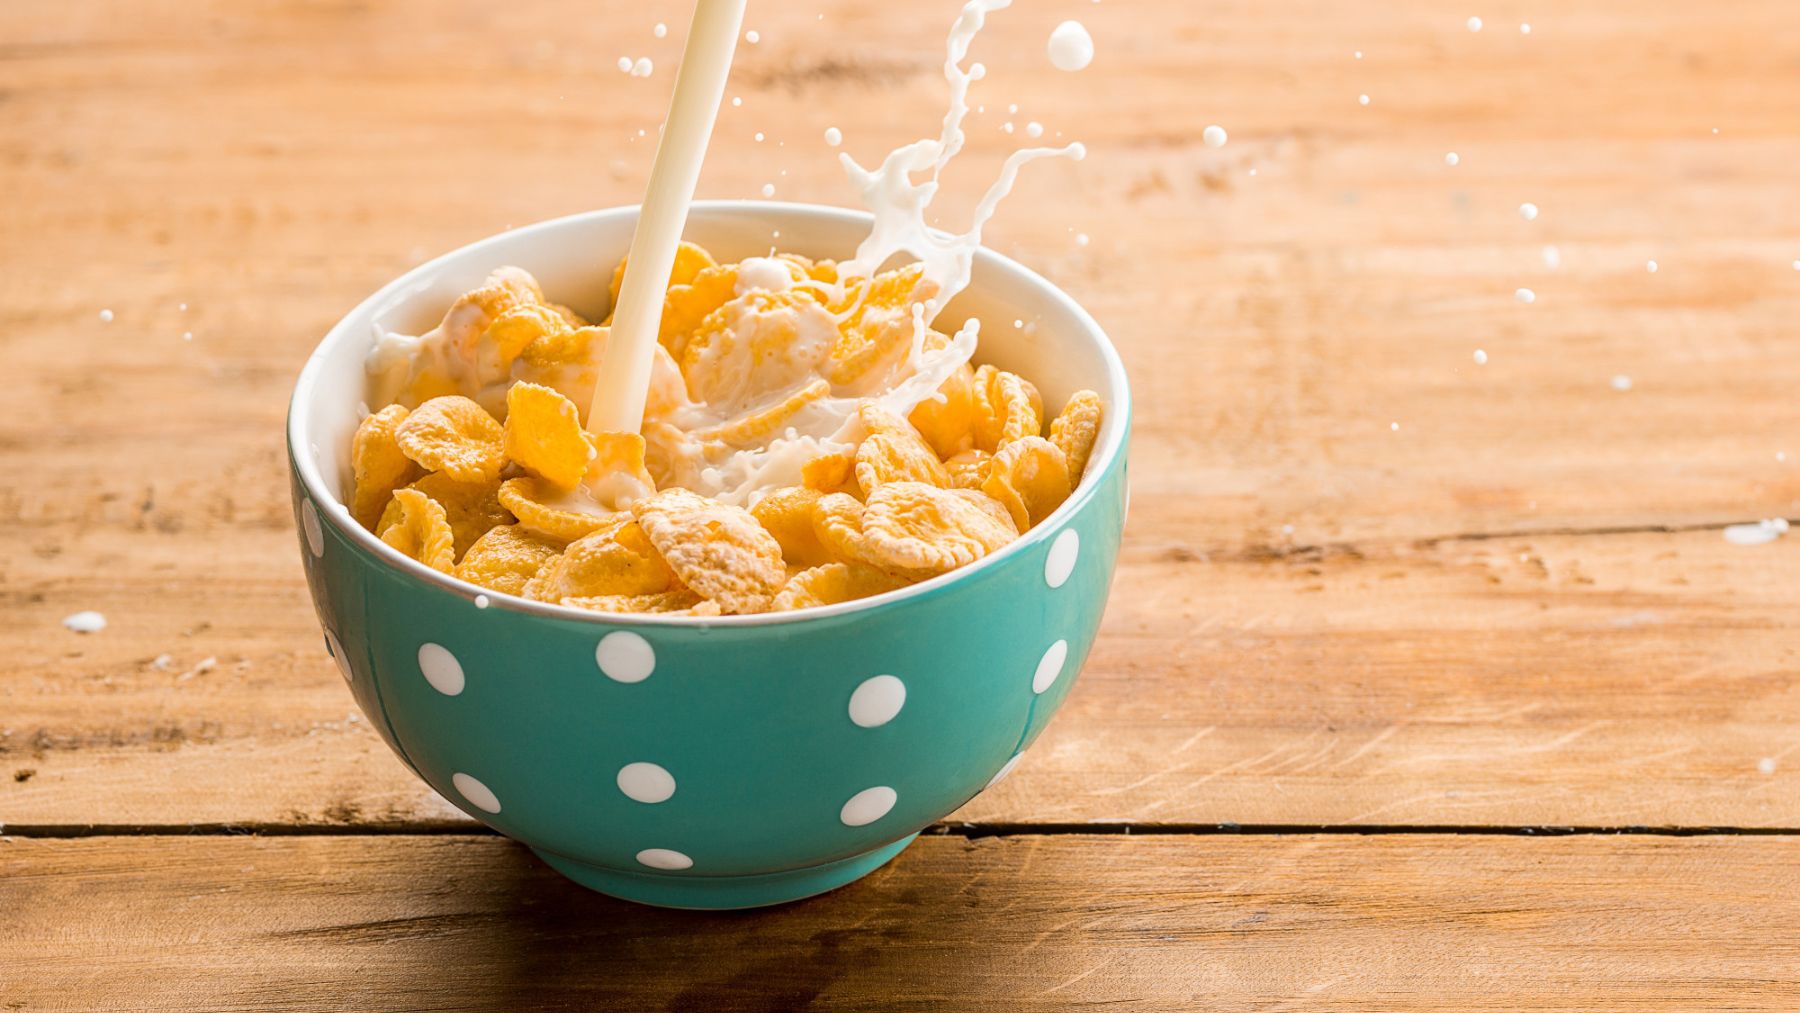 Estos son los cereales más saludables de Mercadona para el desayuno